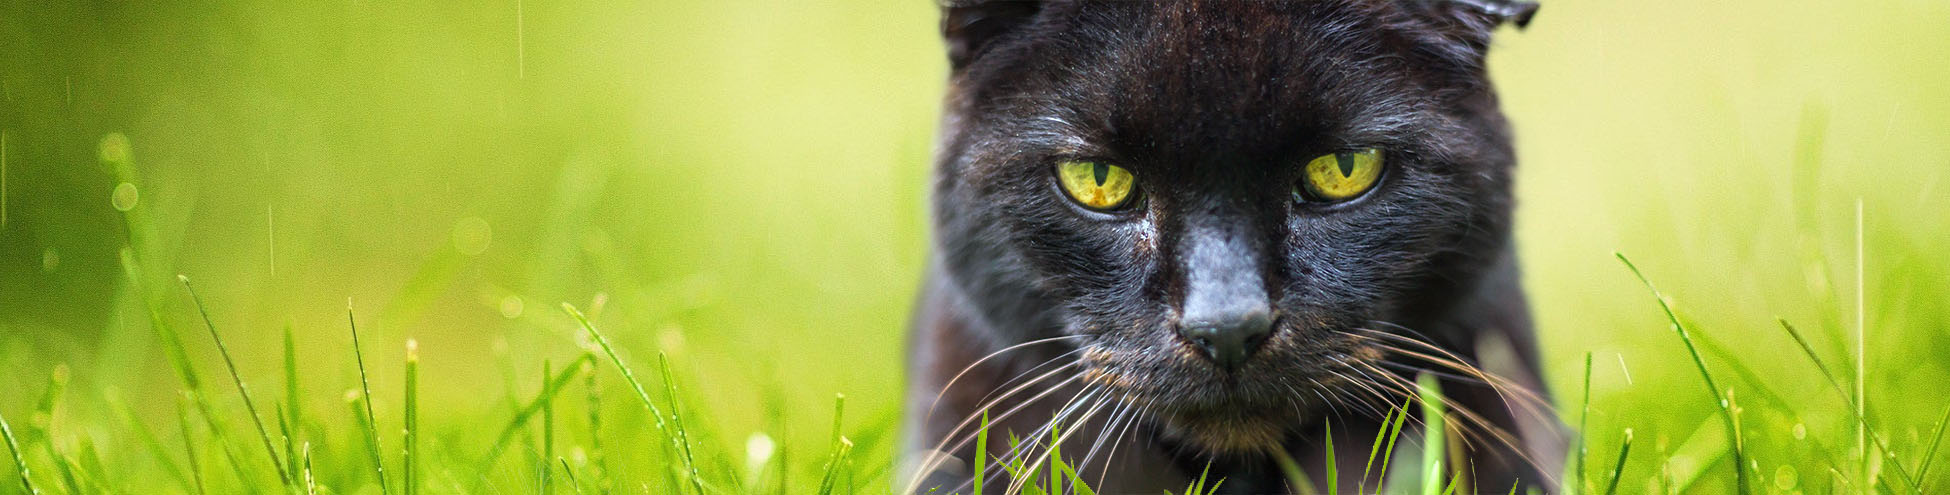 Black Cat in grass